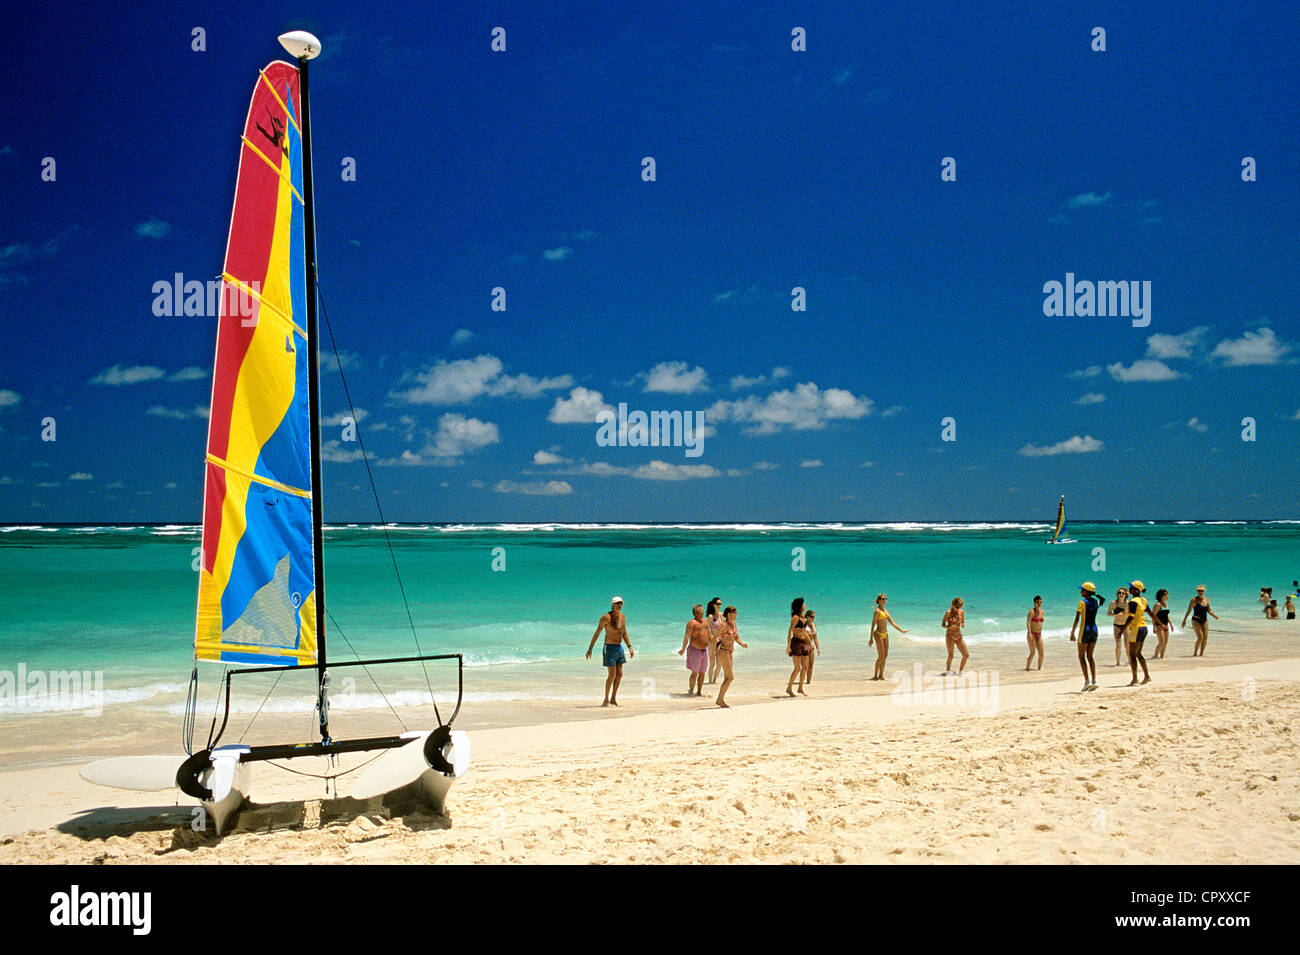 République dominicaine, province de La Altagracia, Punta Cana, catamaran et d'aérobie sur la plage Banque D'Images